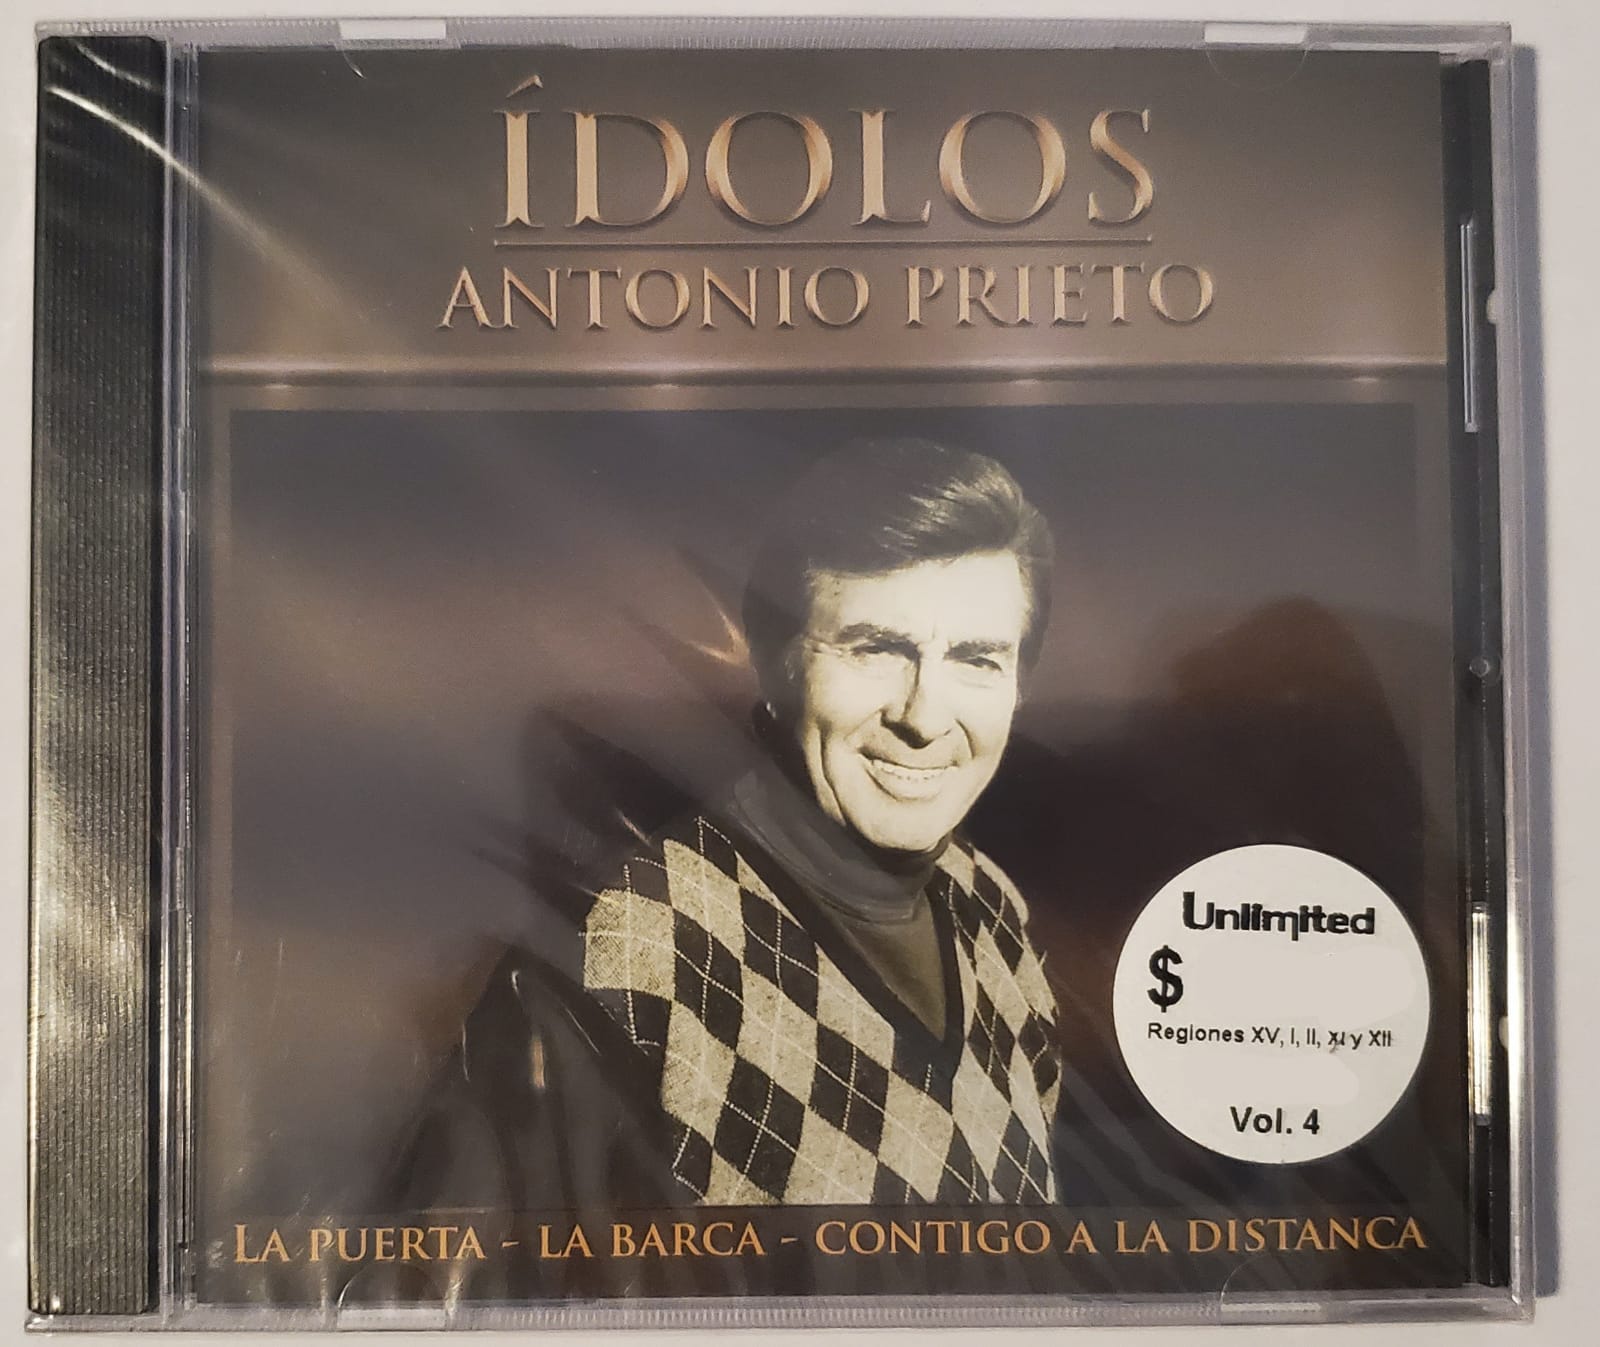 CD Antonio Prieto - Ídolos: Antonio Prieto (La Puerta, La Barca, Contigo a la Distancia)